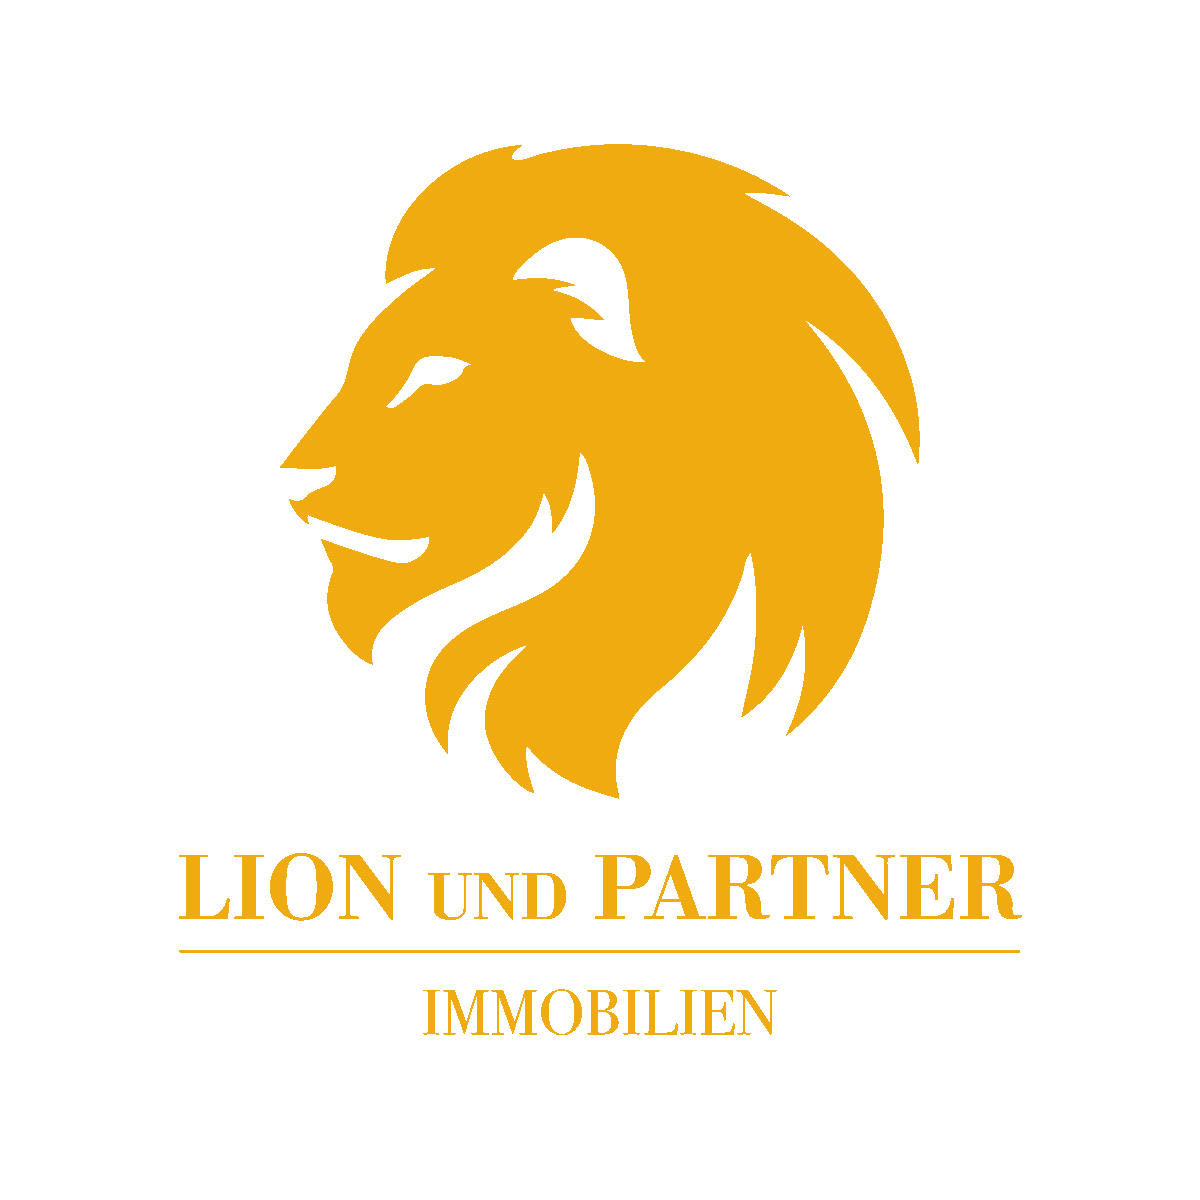 Lion und Partner GmbH